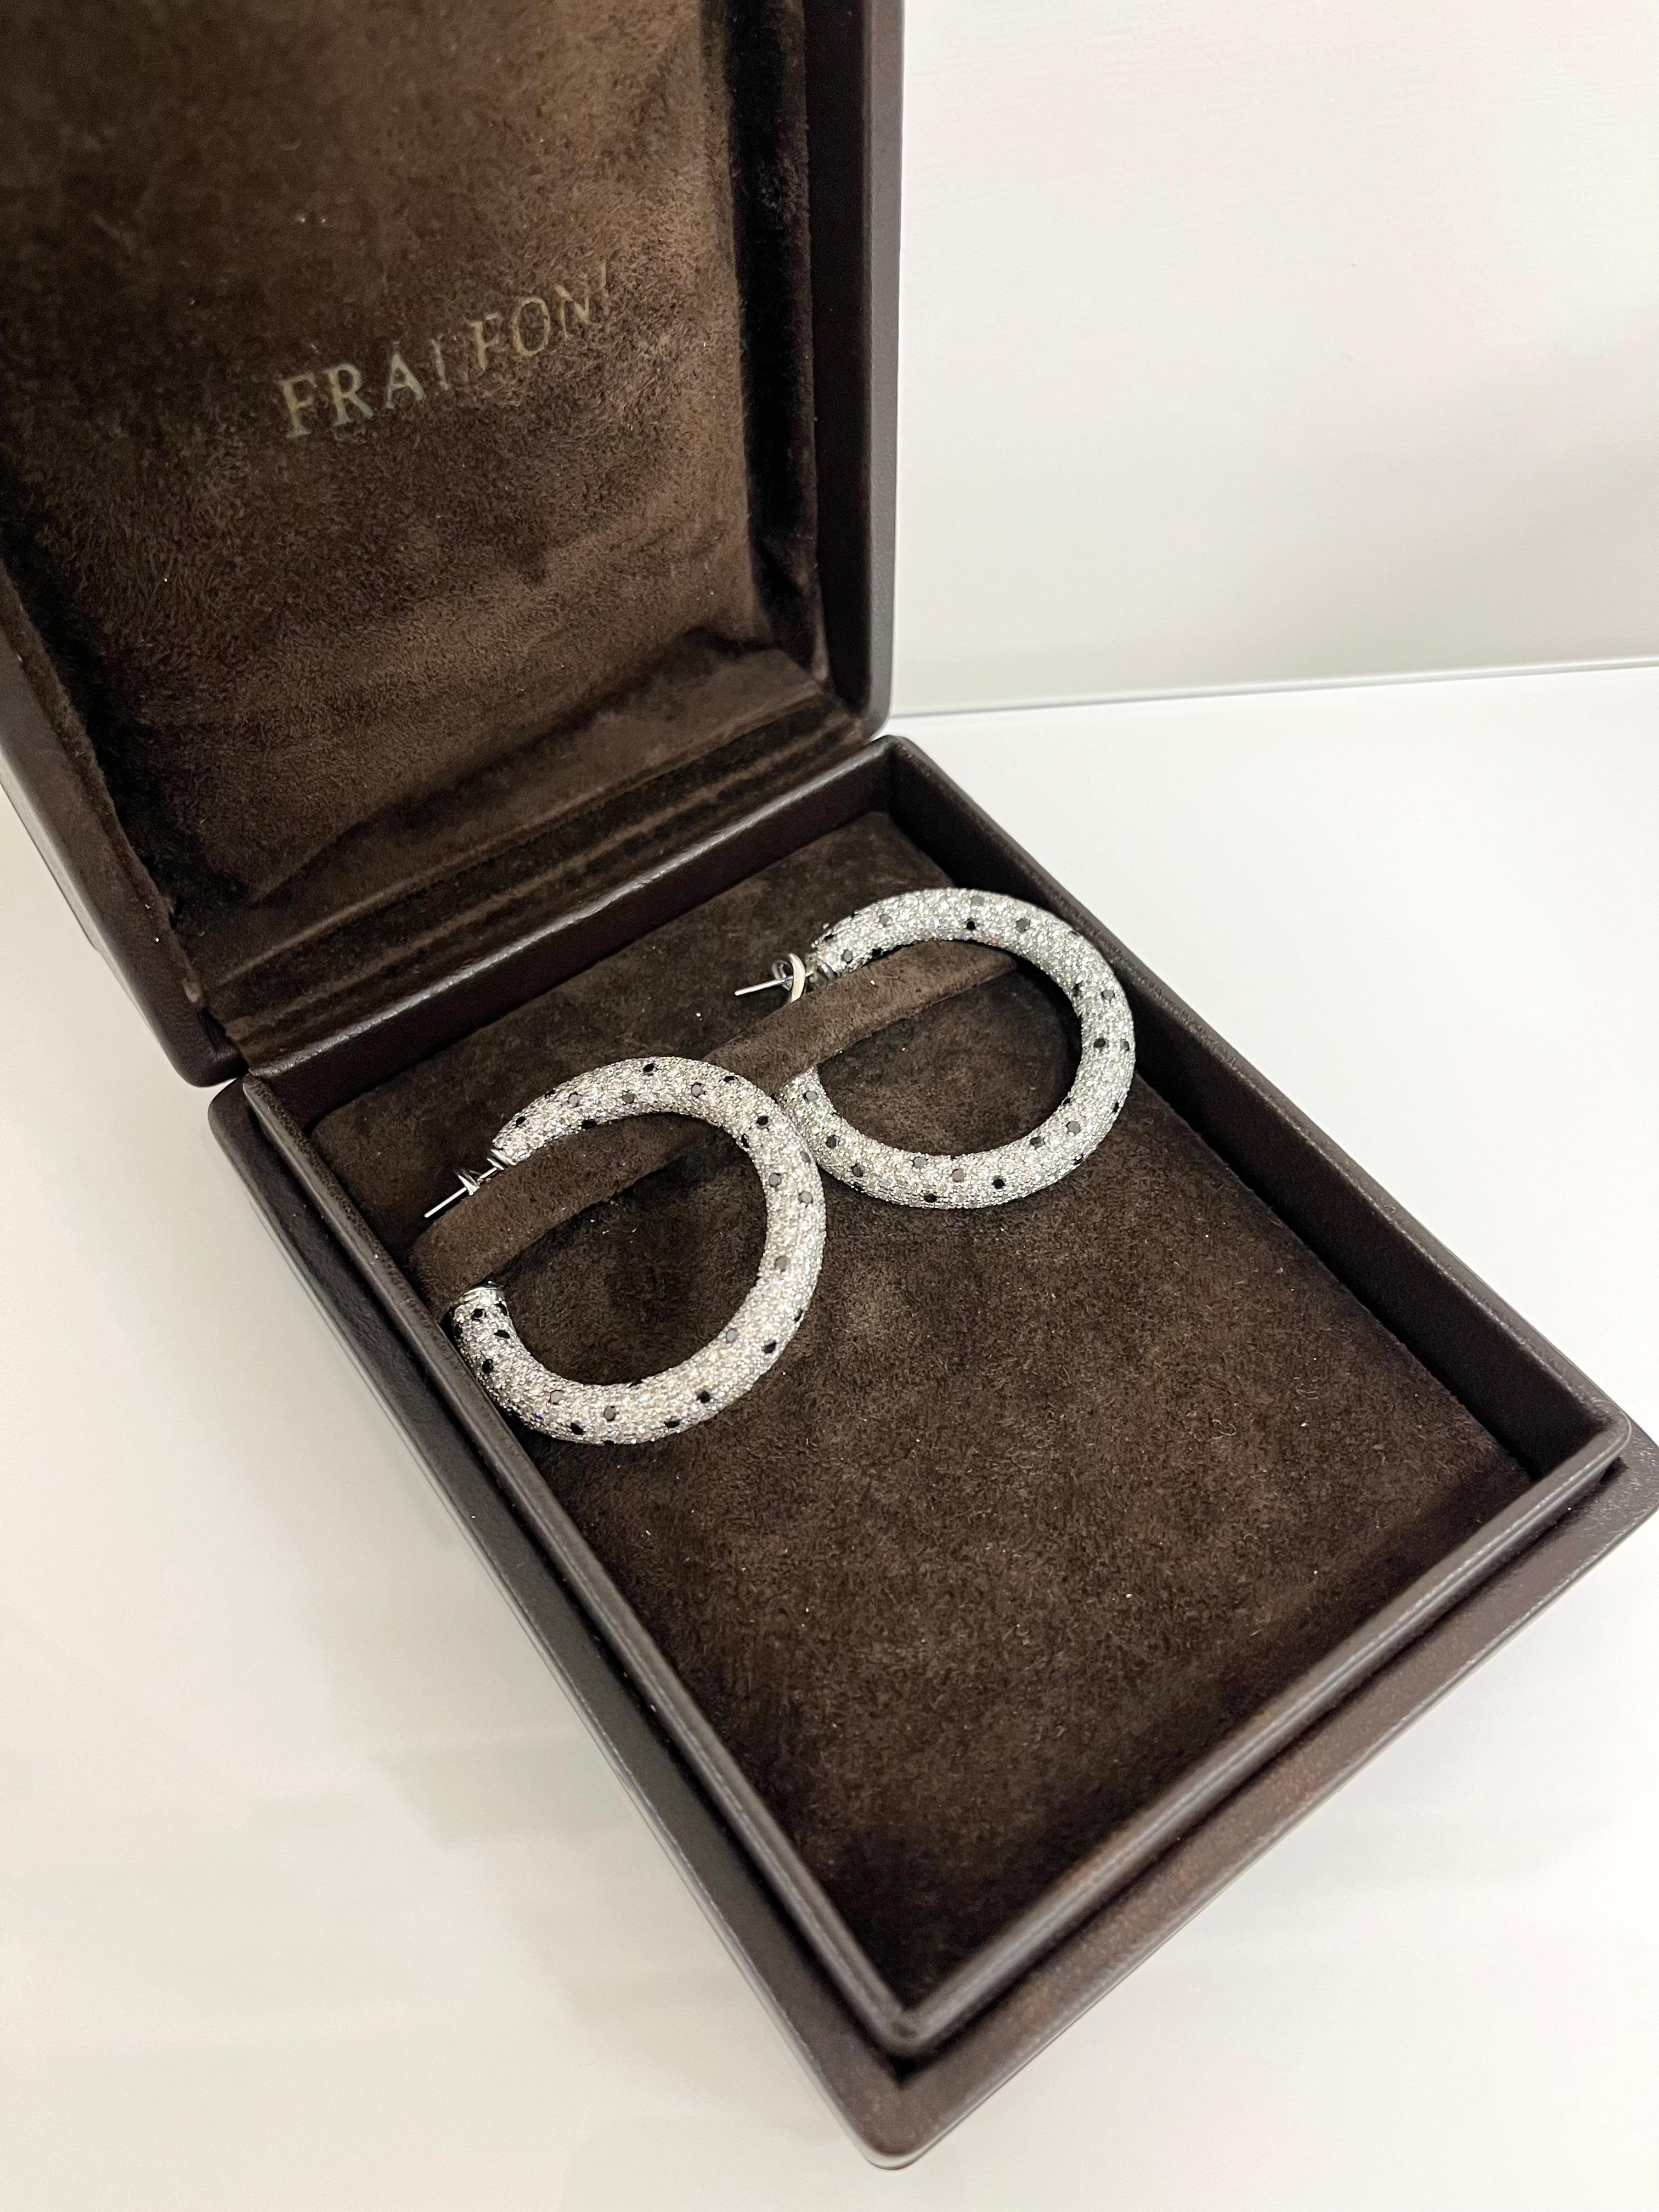 Fraleoni 18 Kt. White Gold Black and White Diamonds Hoops Earrings For Sale 1